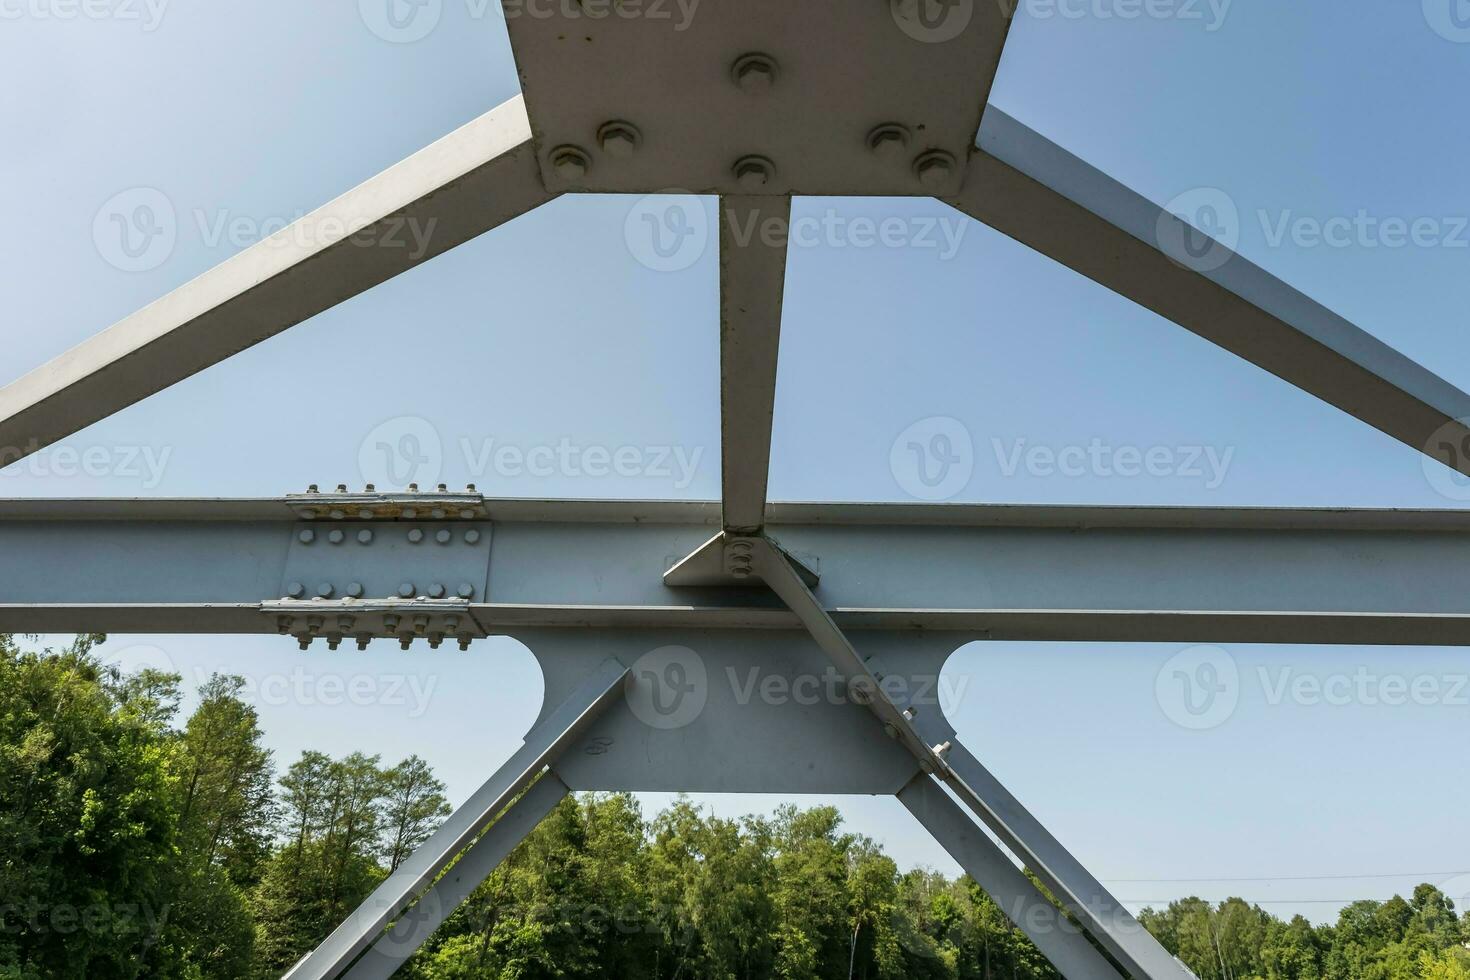 tornillos y nueces en metal platos de acero estructura de pesado deber Derecho travesaño de marco y puente apoyo foto